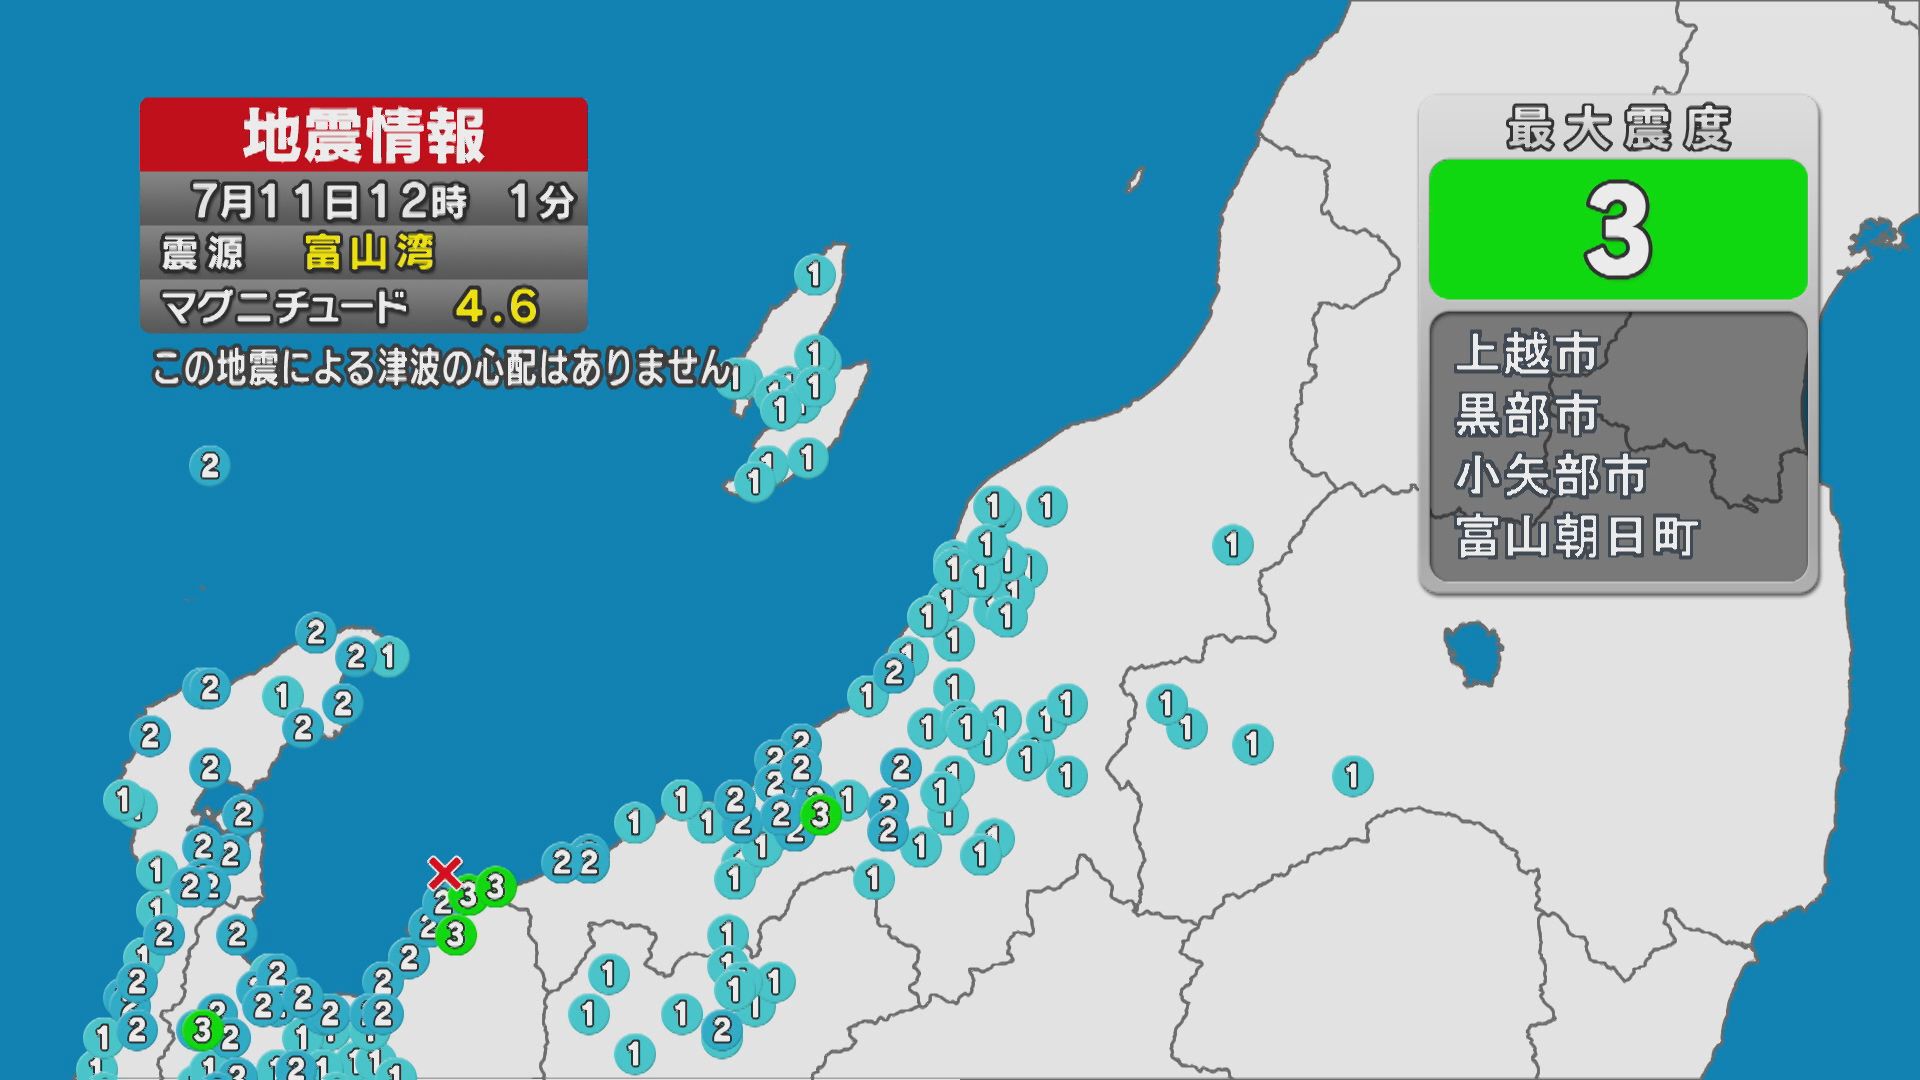 午後0時1分に地震発生 上越市で震度3 震源は富山湾【新潟】